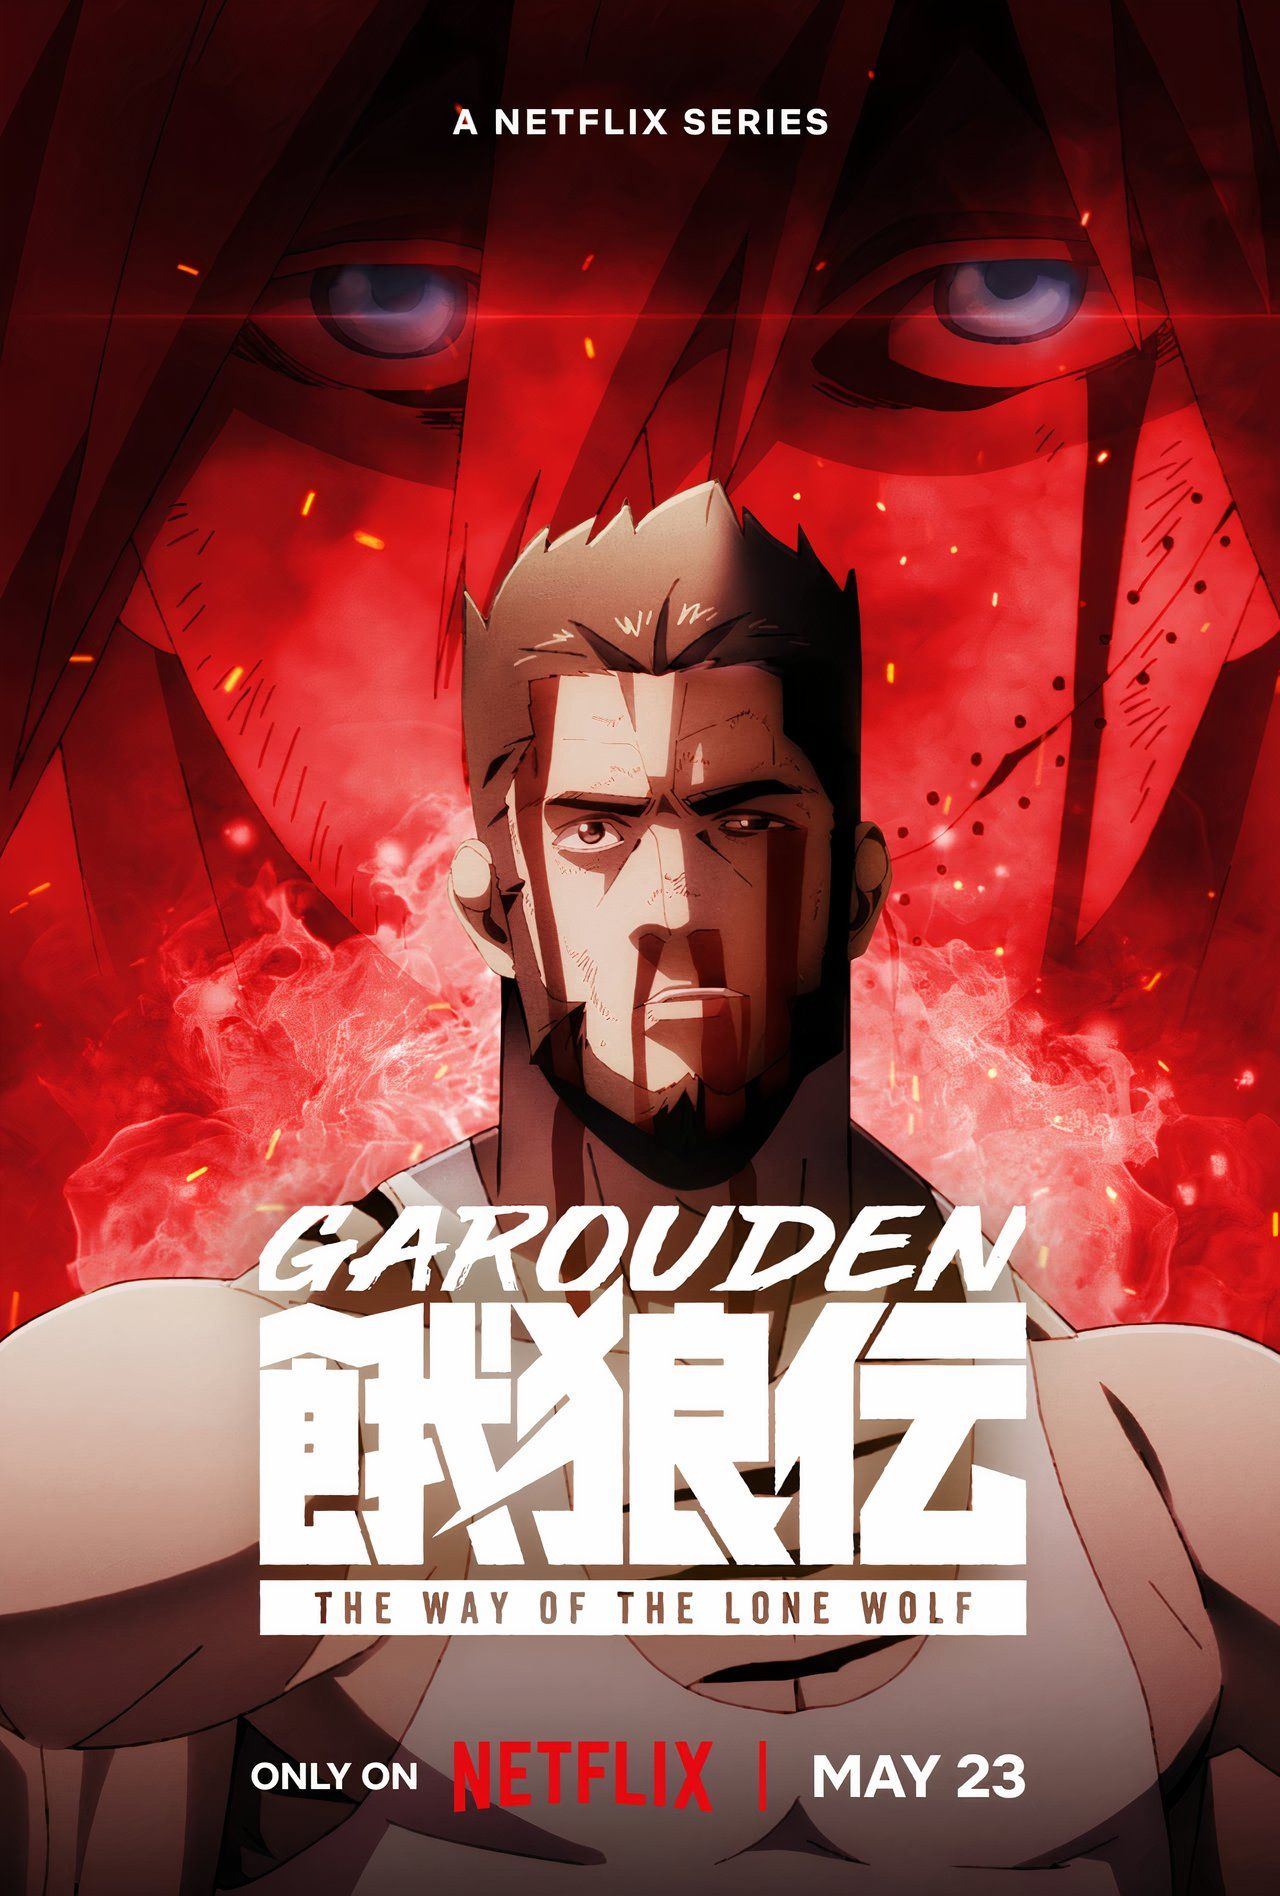 Обзор Garouden: добротное аниме-боевик с несколькими серьезными недостатками, сдерживающими его